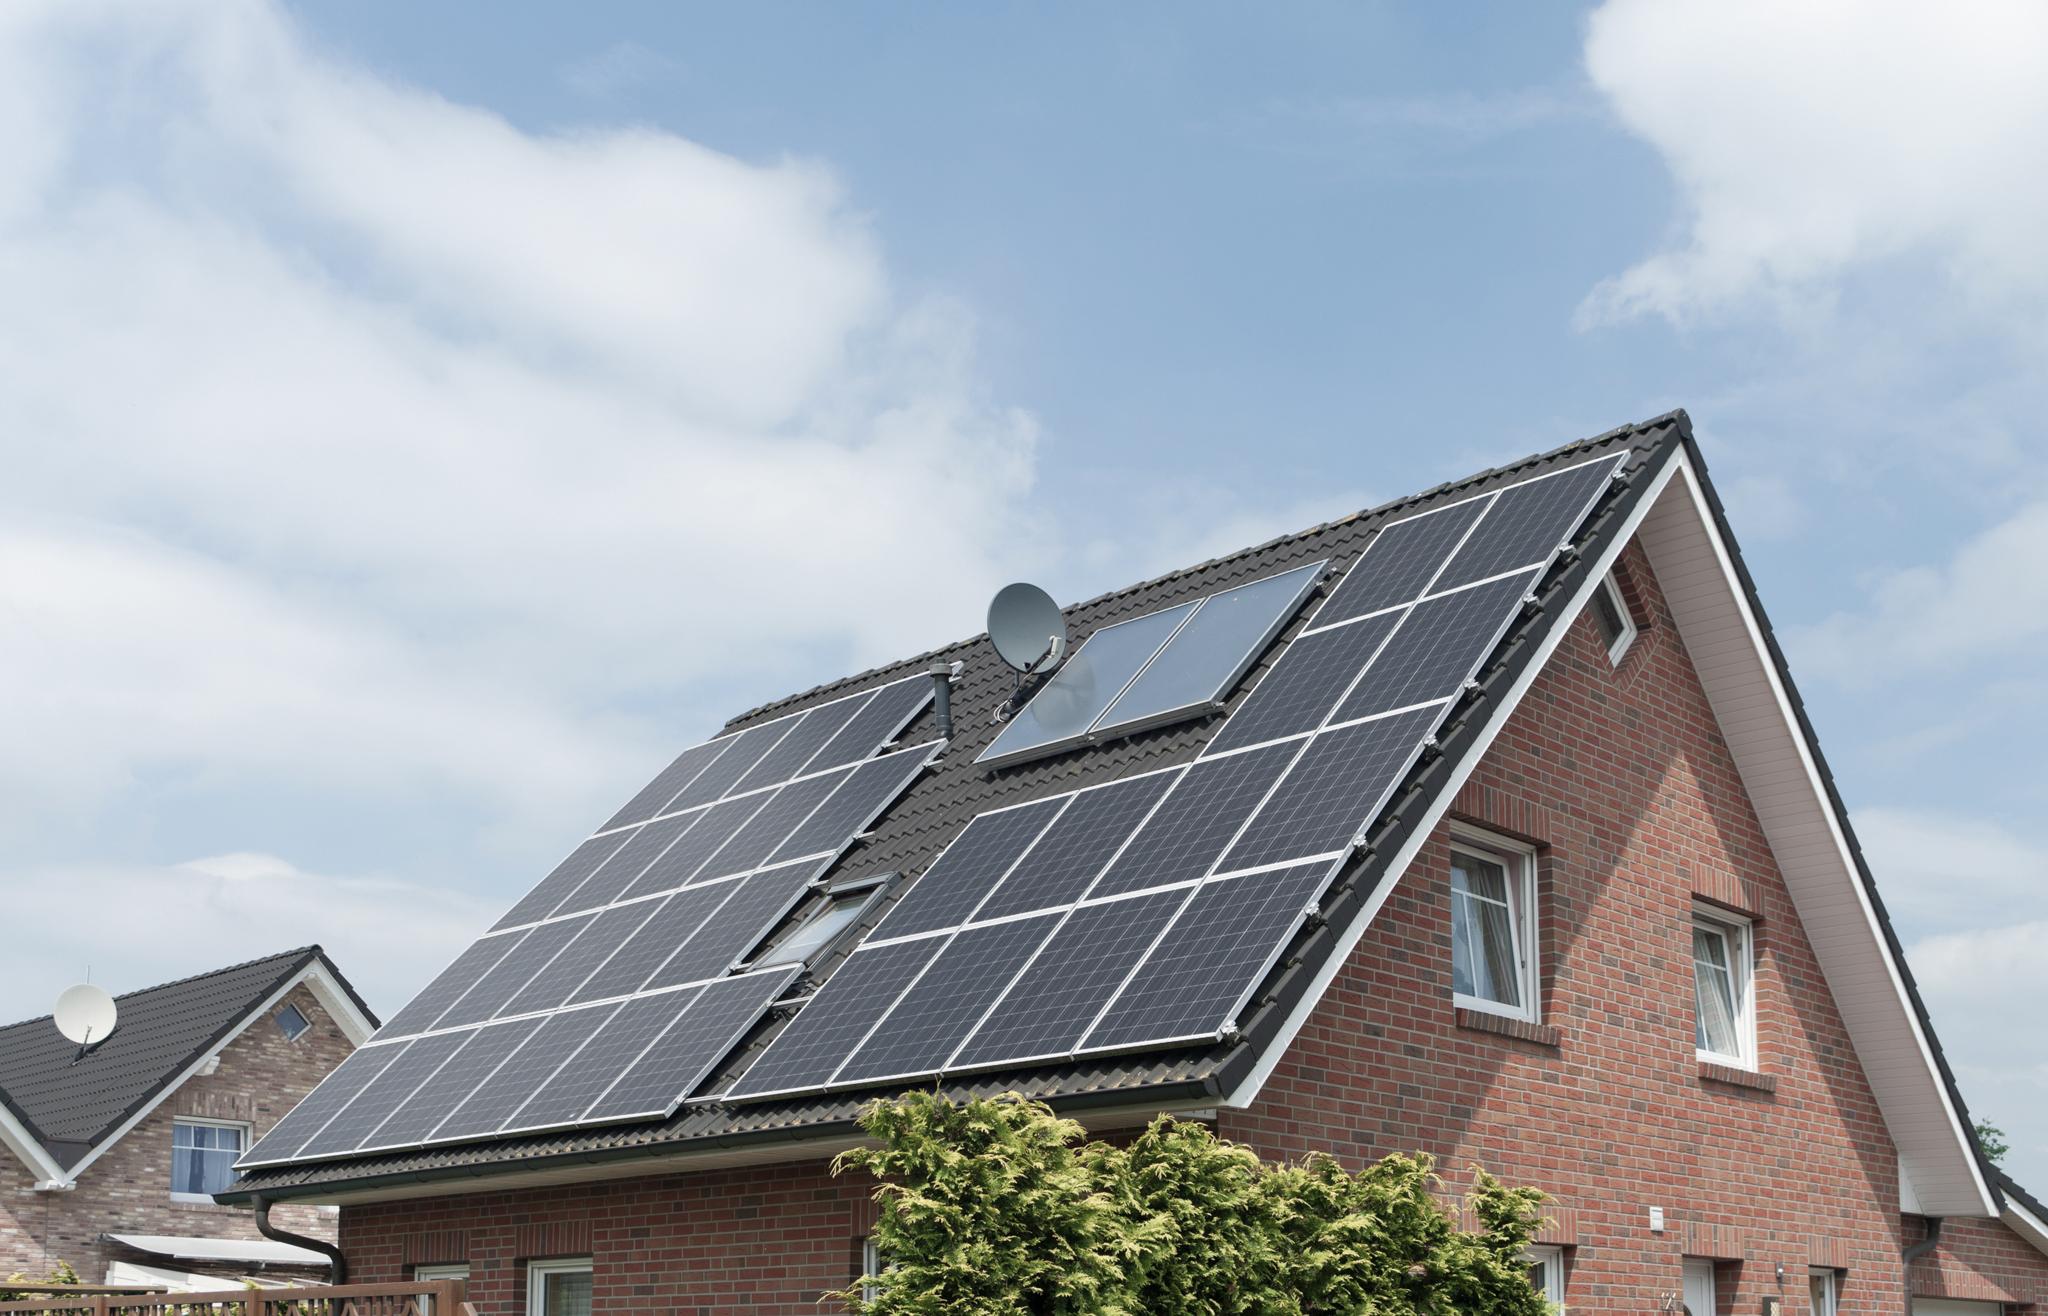 Einfamilienhaus mit Solaranlage auf dem Dach – Solarthermie und Photovoltaik